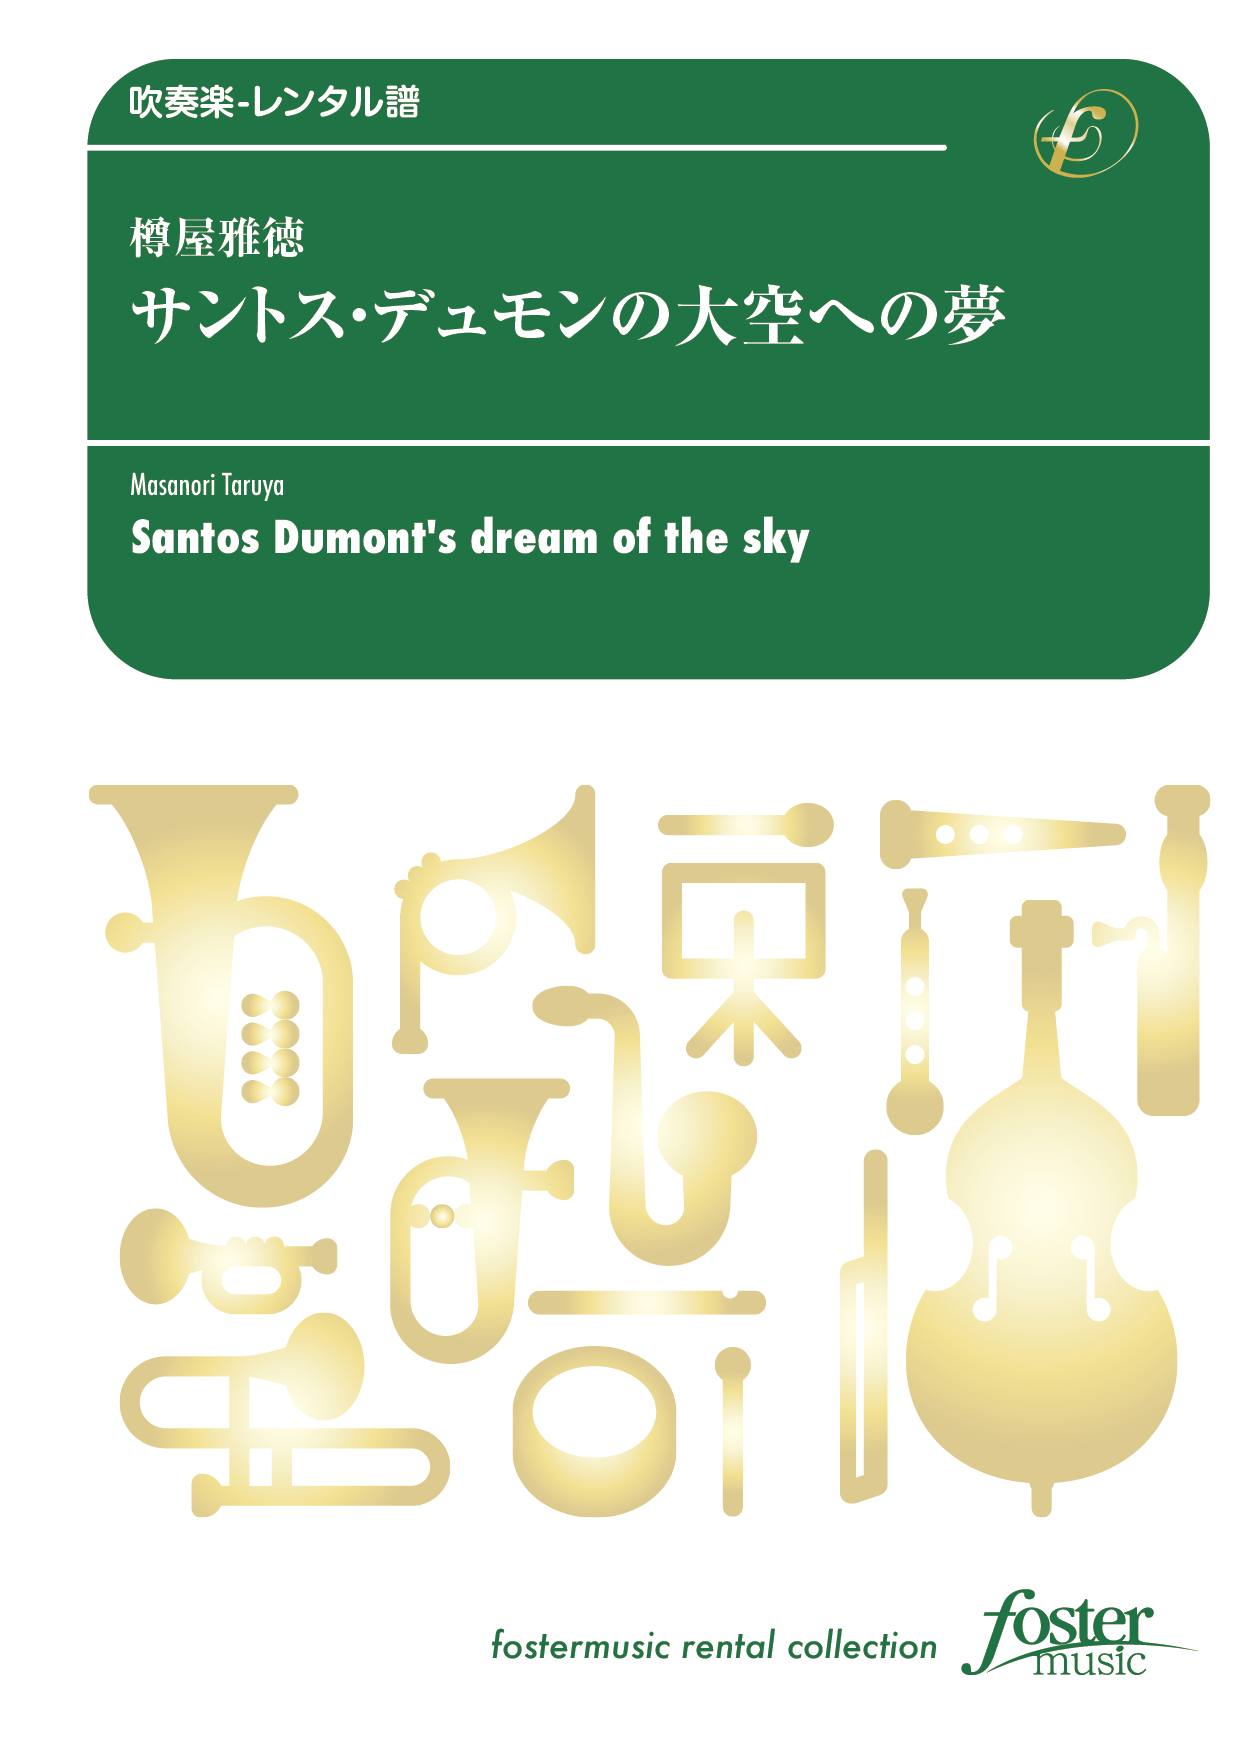 サントス・デュモンの大空への夢：樽屋雅徳 [吹奏楽中編成] - フォスターミュージック株式会社